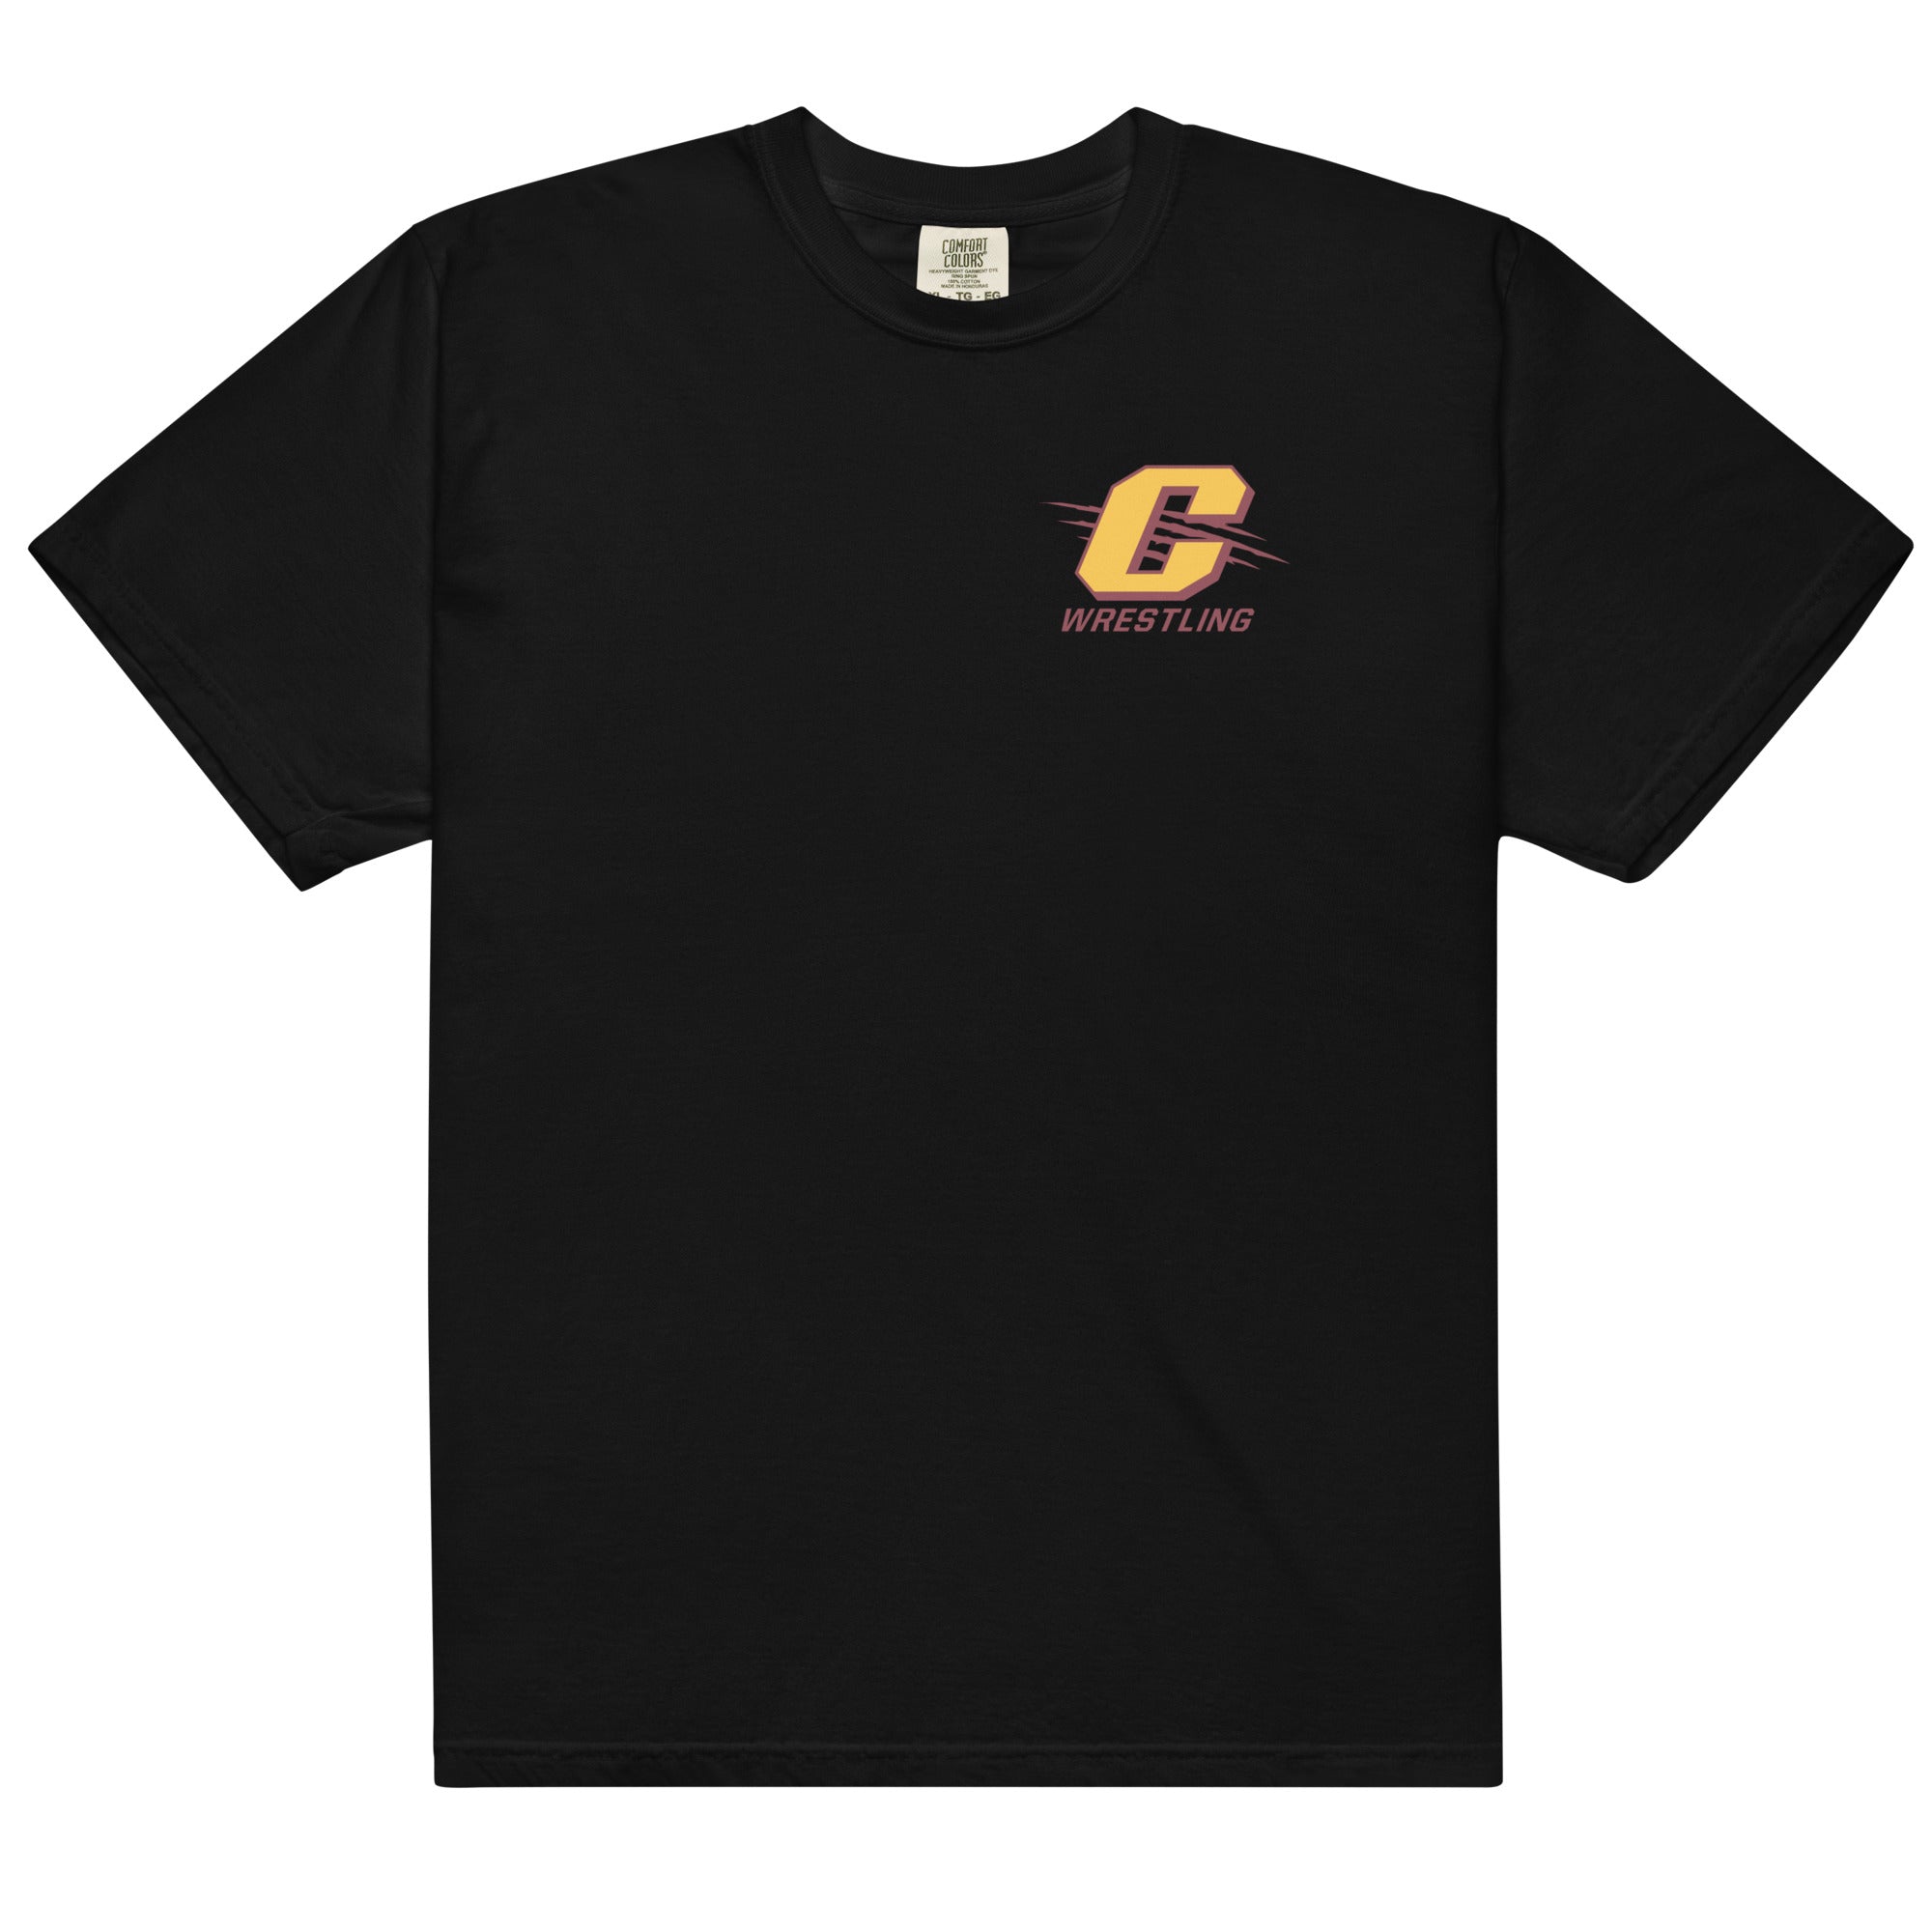 Cleveland High School Mens Garment-Dyed Heavyweight T-Shirt